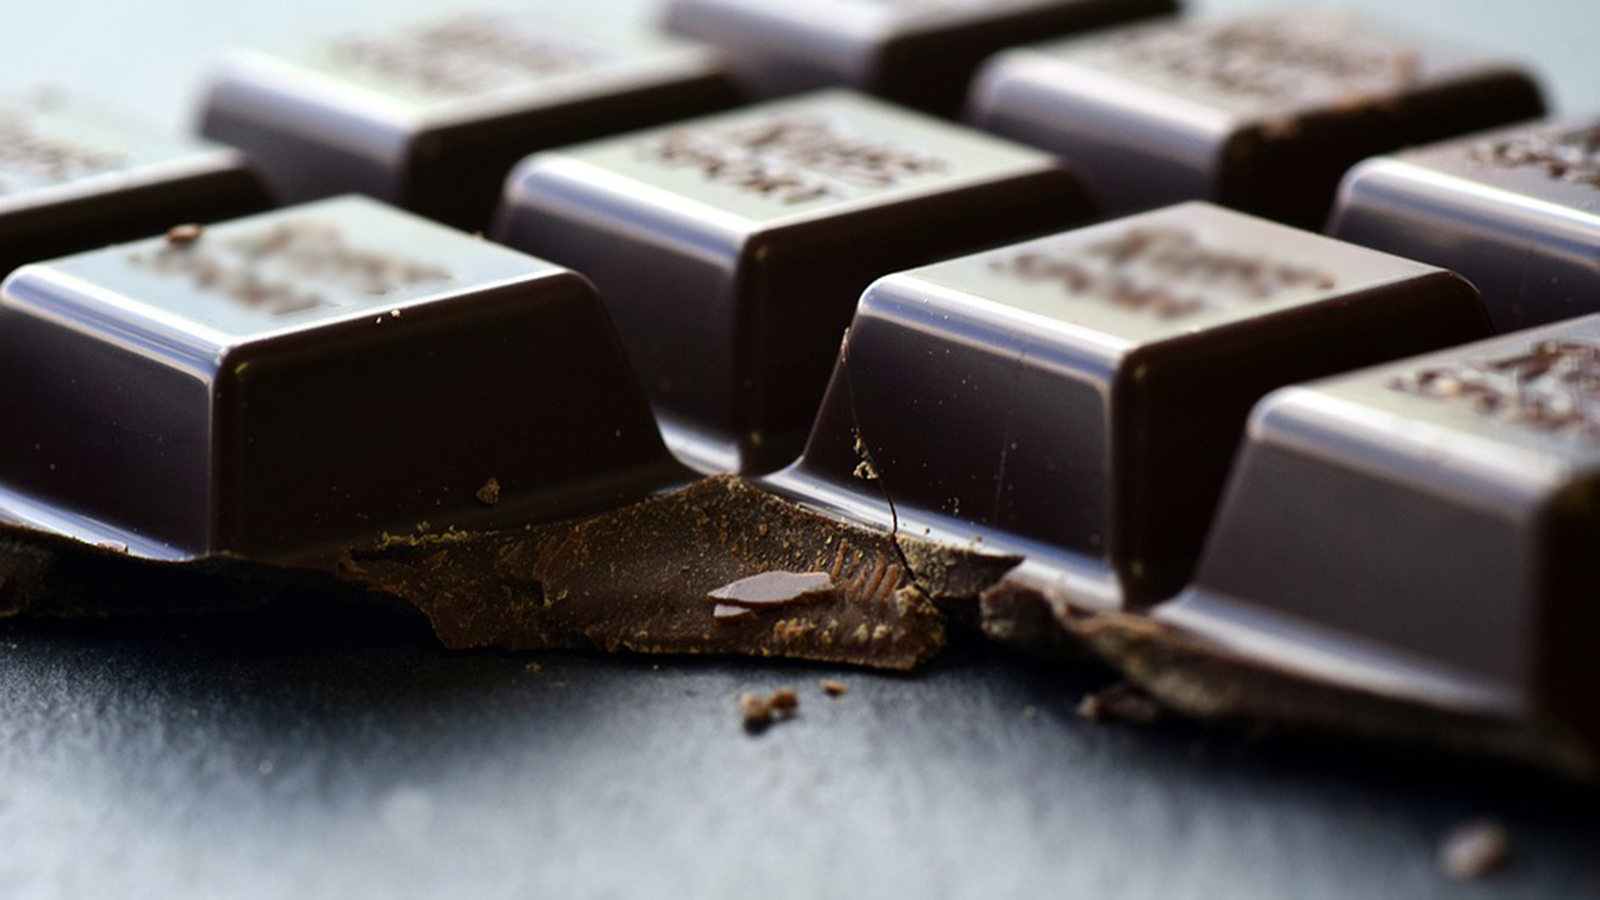 ‪الشوكولاتة الداكنة تساهم في تحسين المزاج (بيكسابي)‬ الشوكولاتة الداكنة تساهم في تحسين المزاج (بيكسابي)